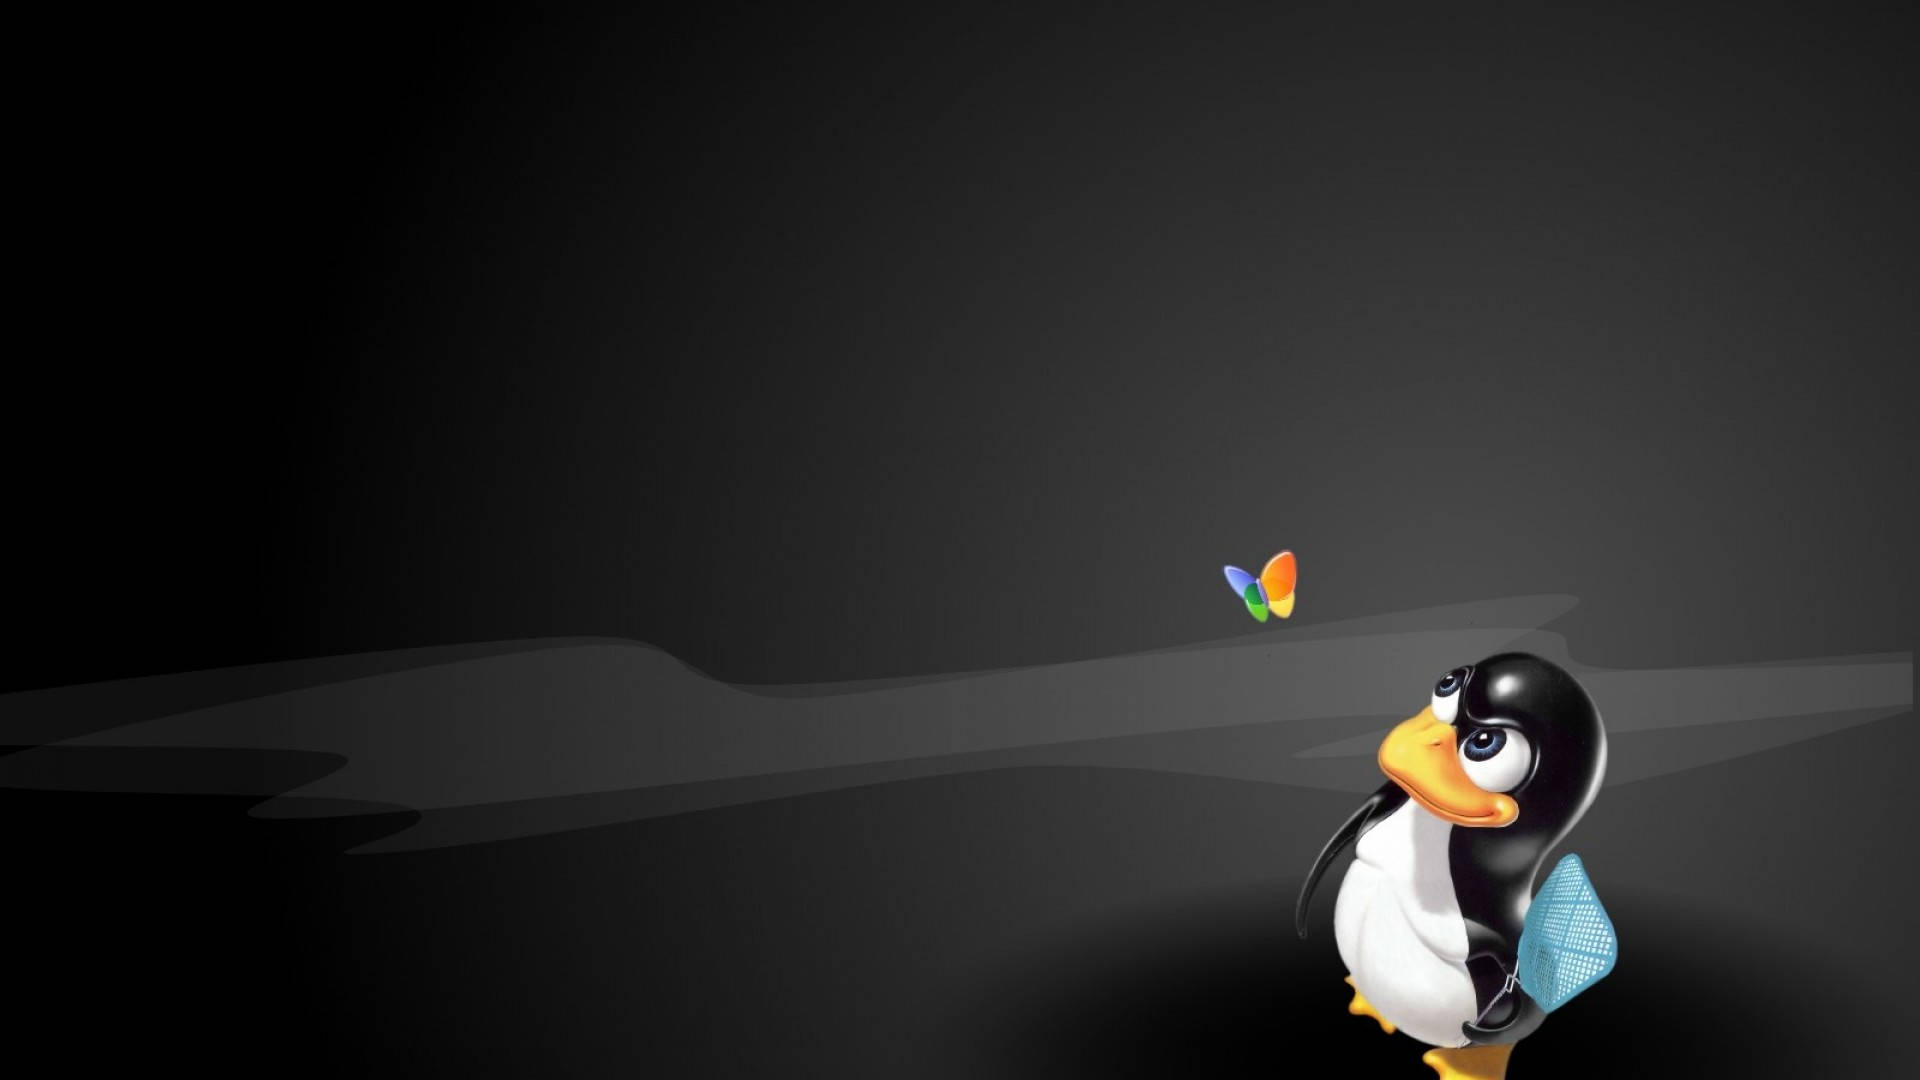 Black Linux Desktop Tux Character Mascot Wallpaper